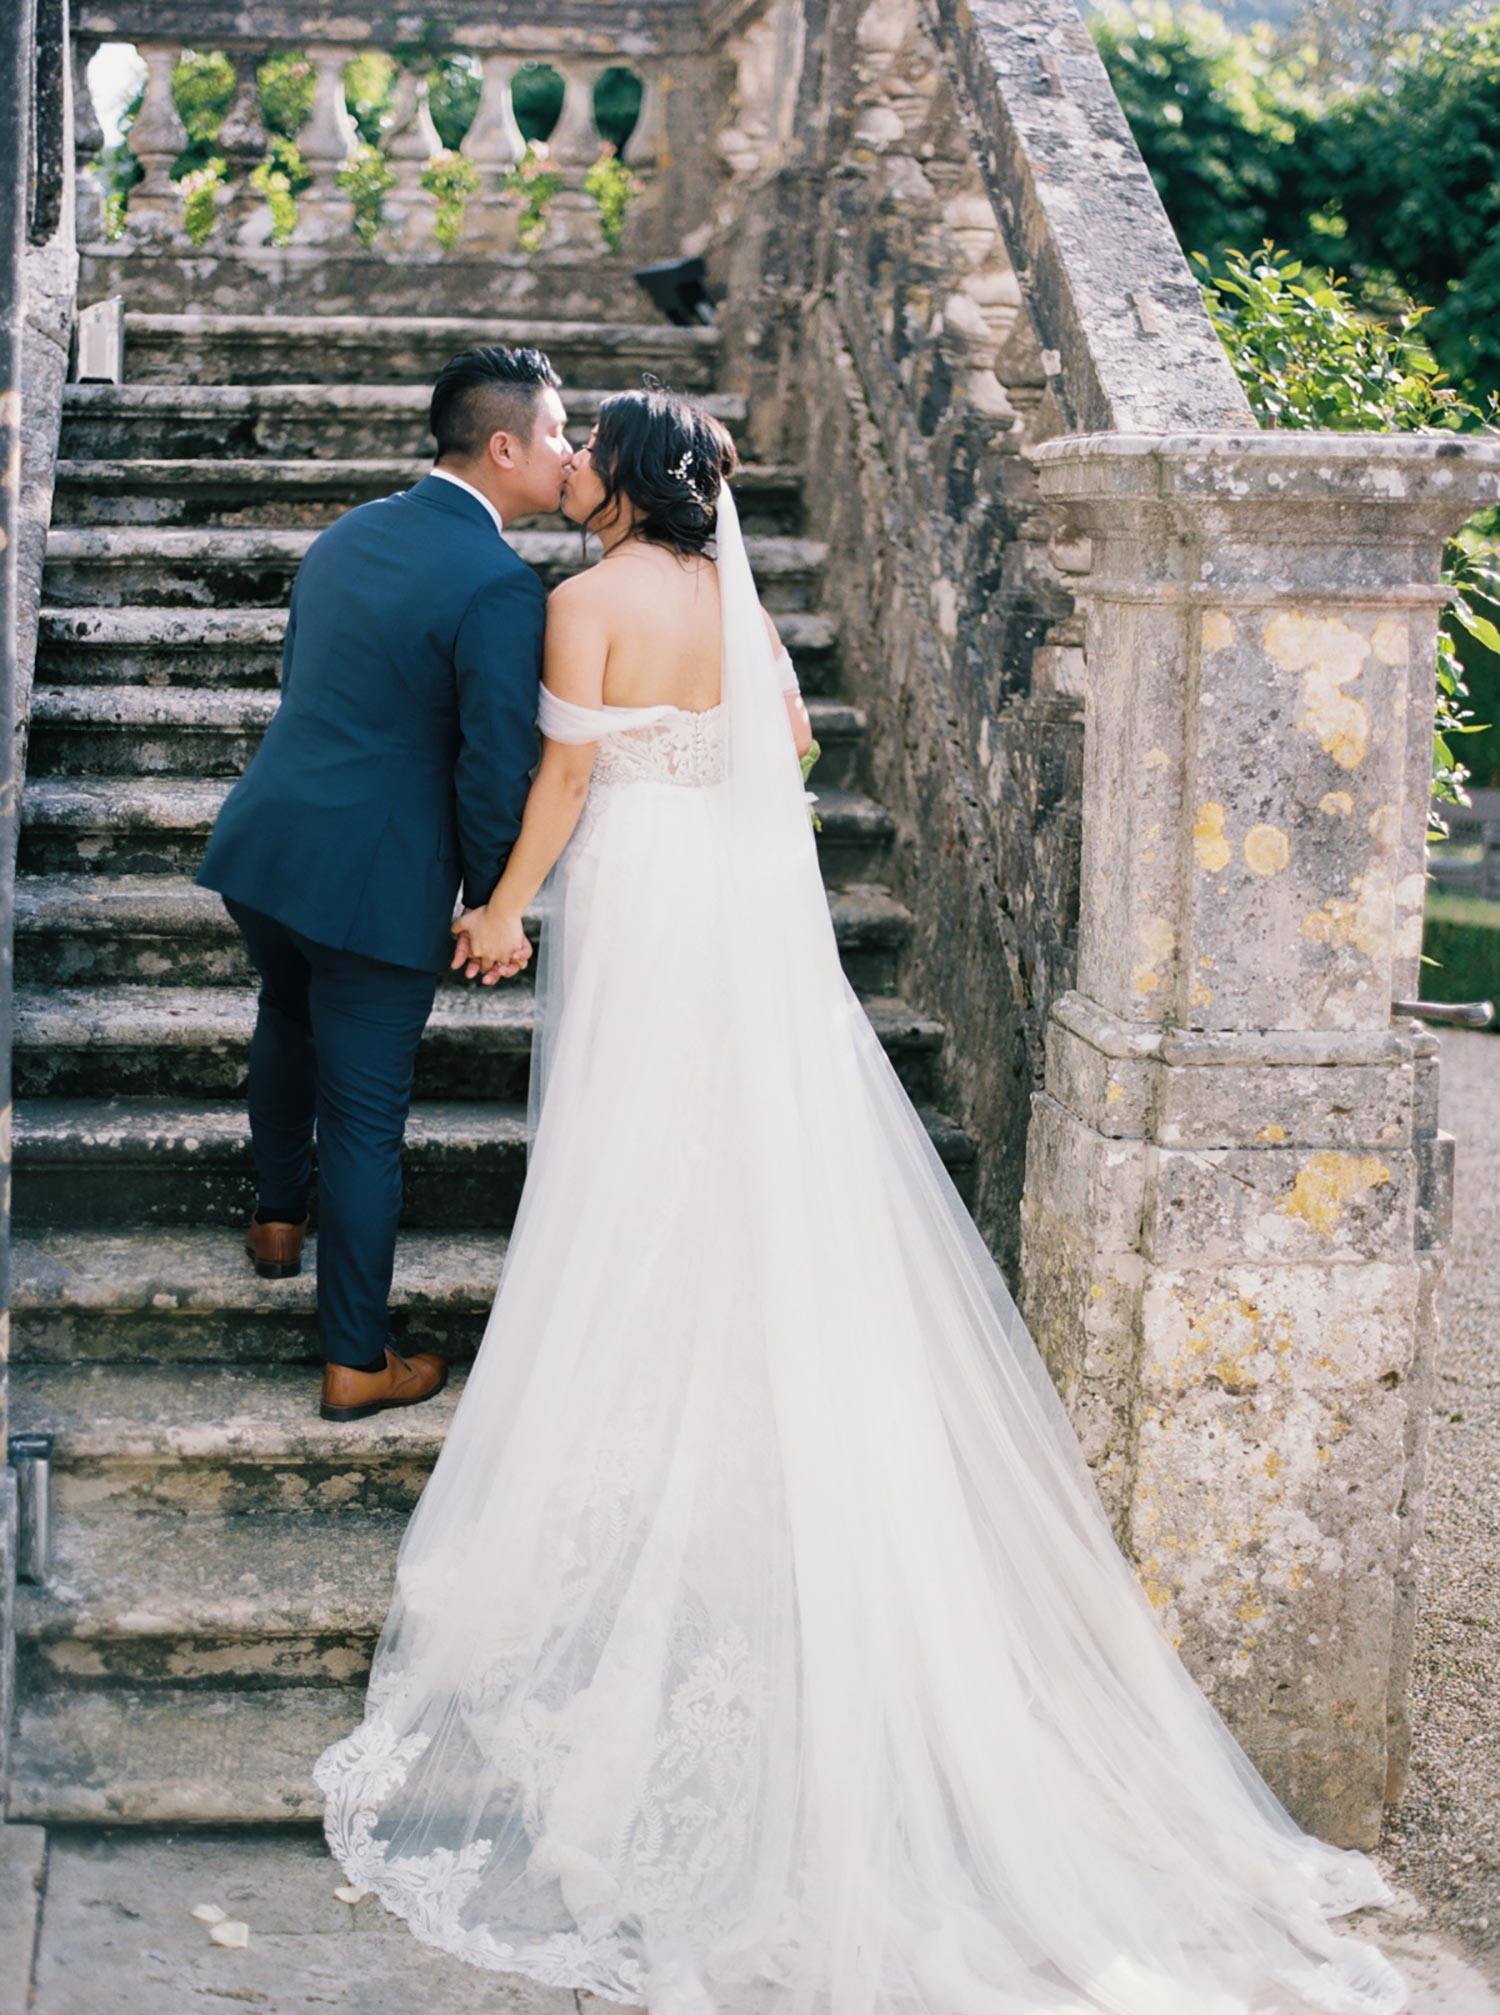 villa italienne historique avec vieil escalier en pierre et mariée dans une robe de mariée en tulle brodé à épaules dénudées embrassant le marié dans un costume de marié bleu marine